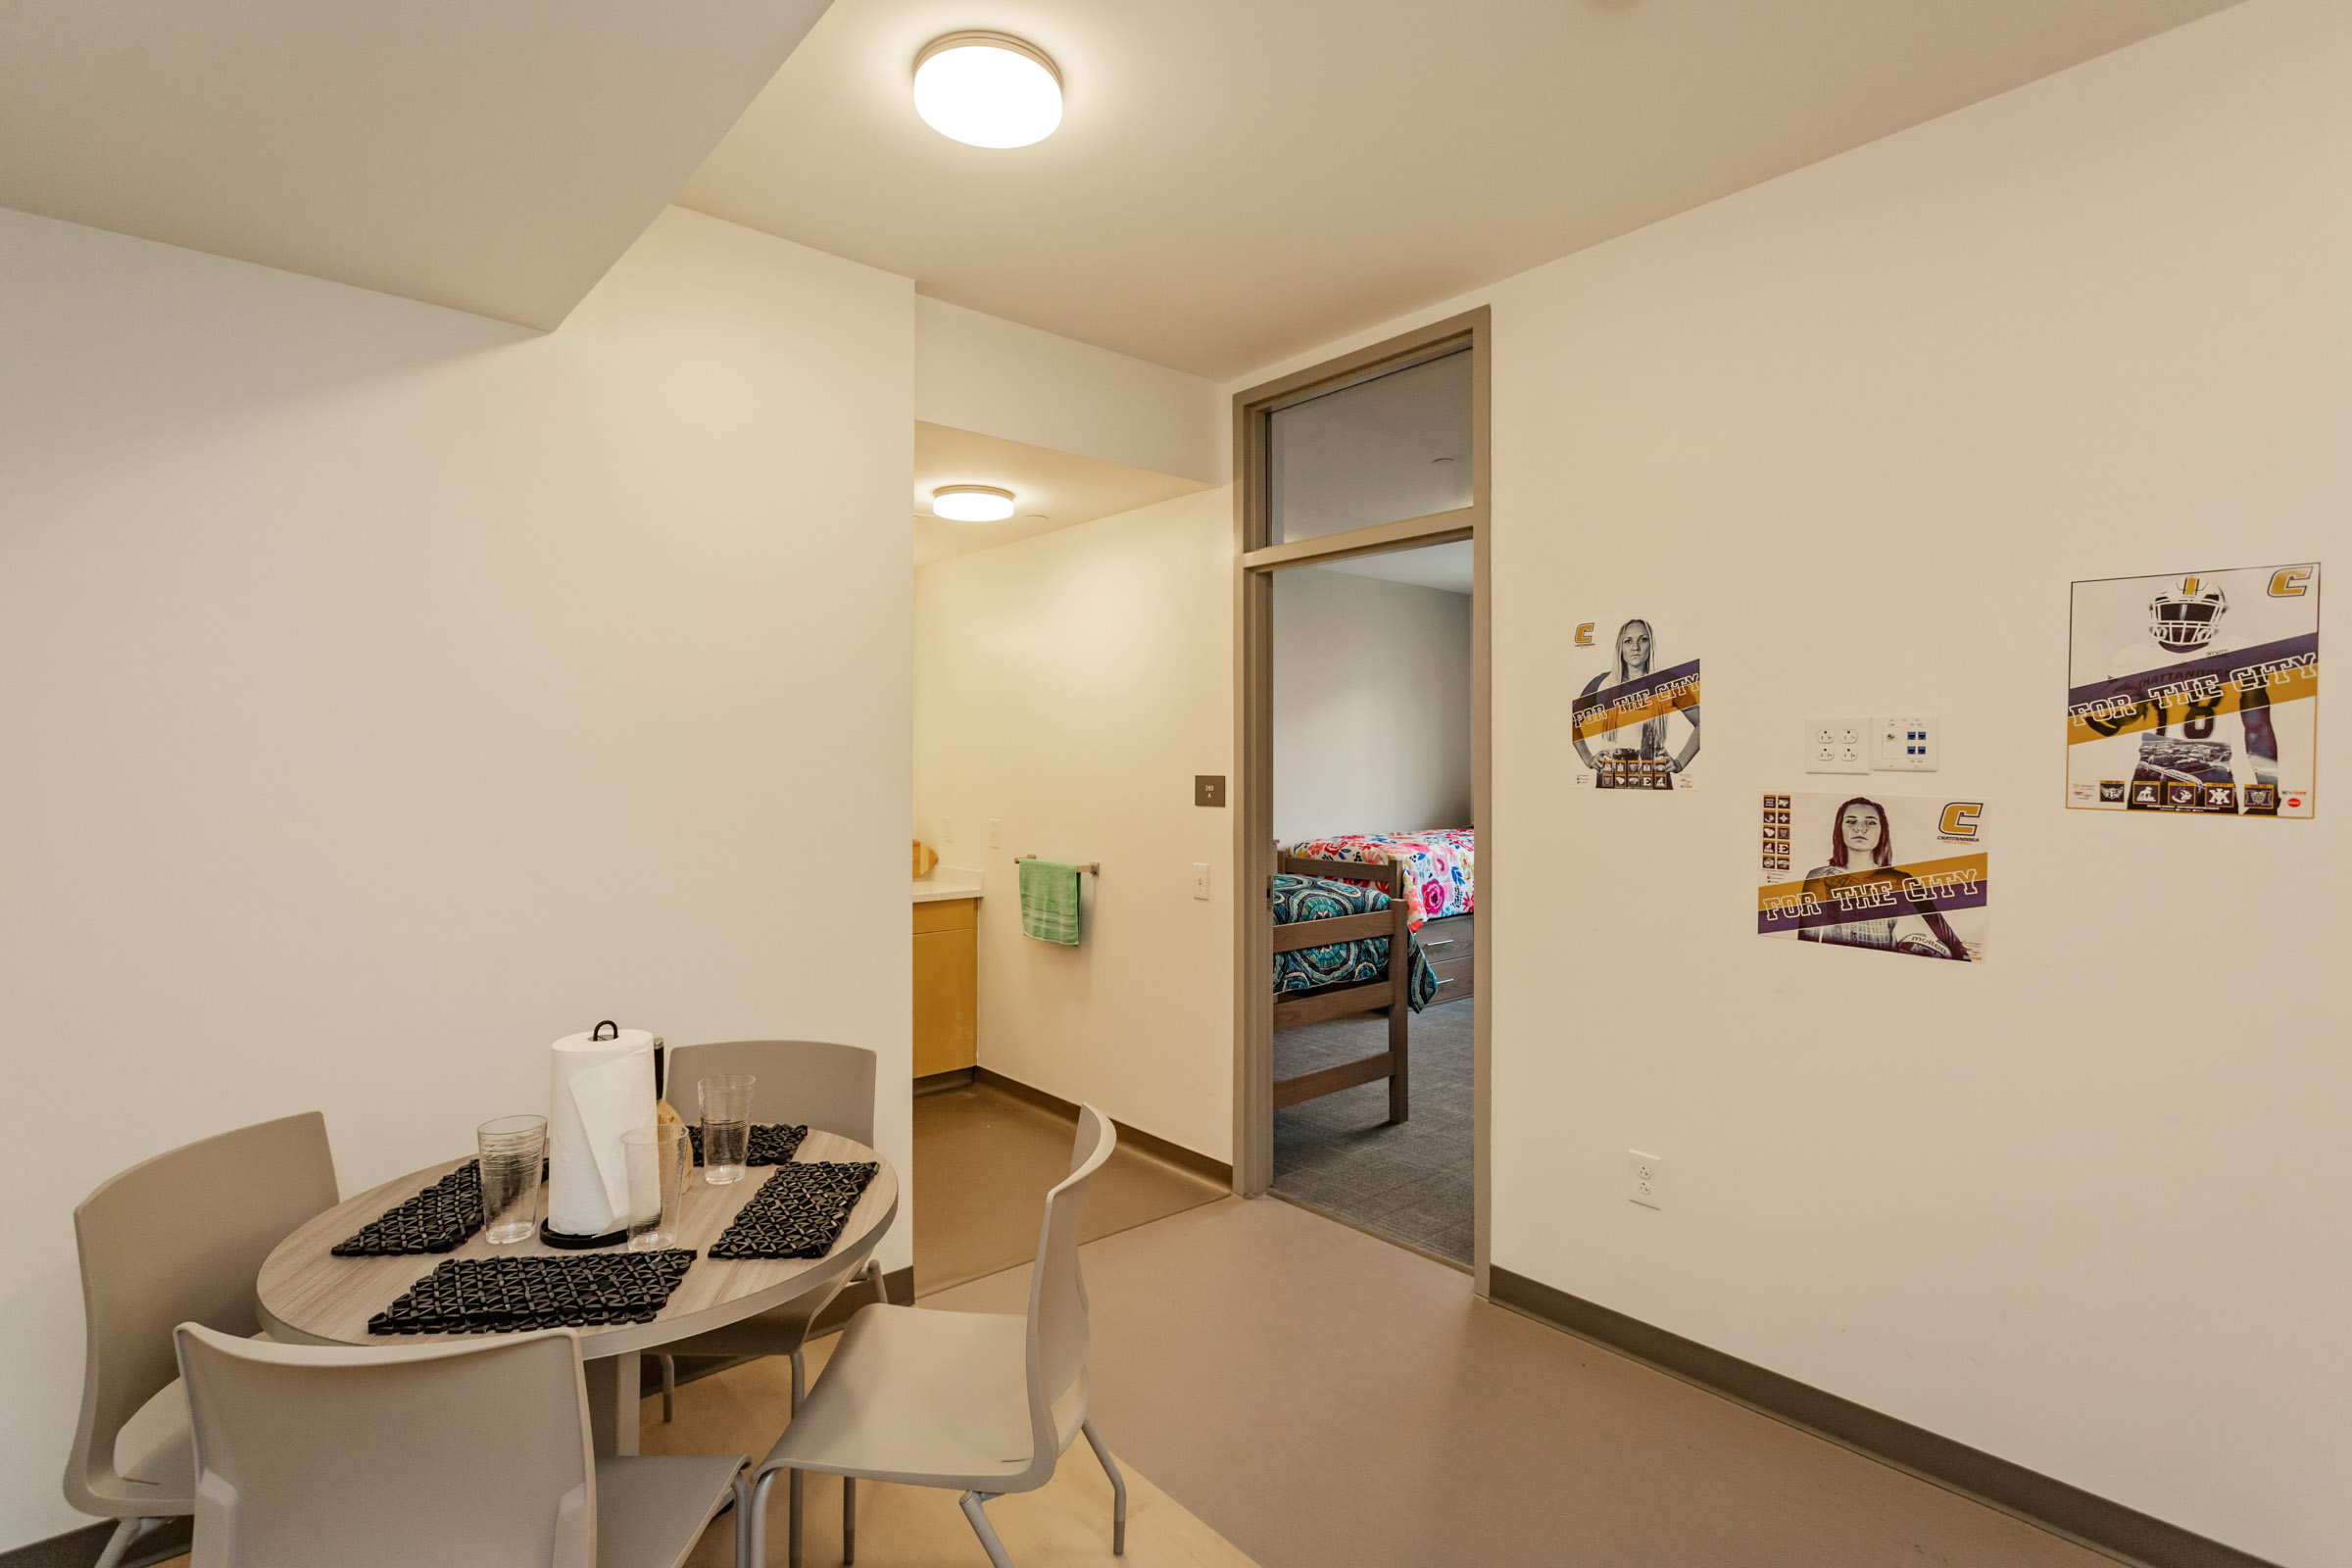 utc-west-student-housing-room